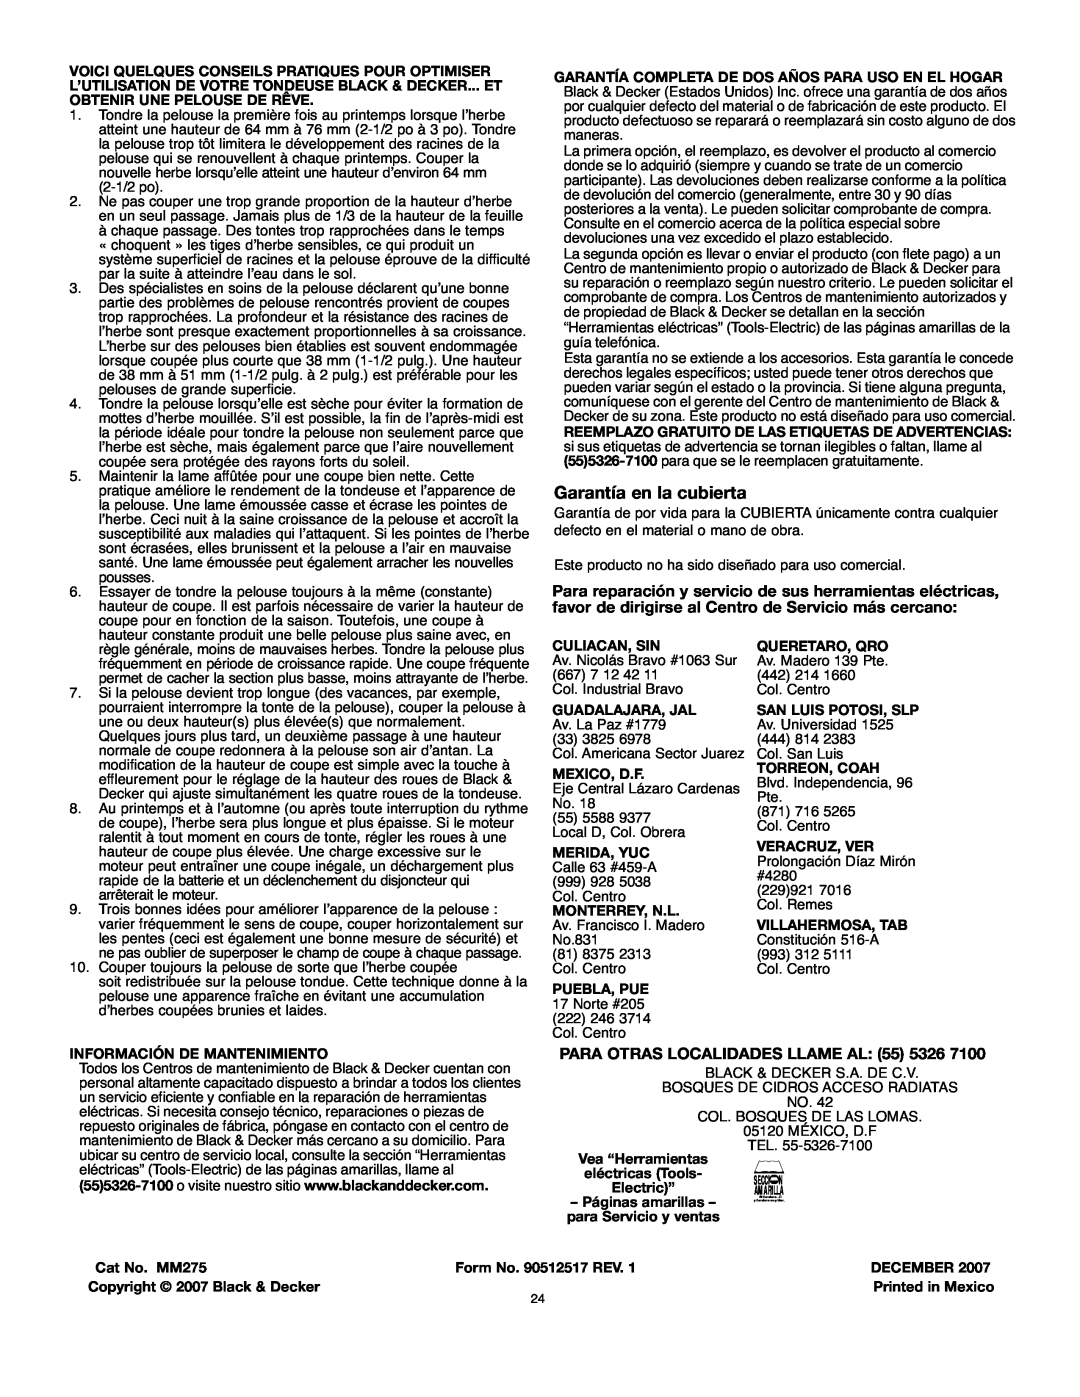 Black & Decker mm275 instruction manual Garantía en la cubierta, PARA OTRAS LOCALIDADES LLAME AL 55 